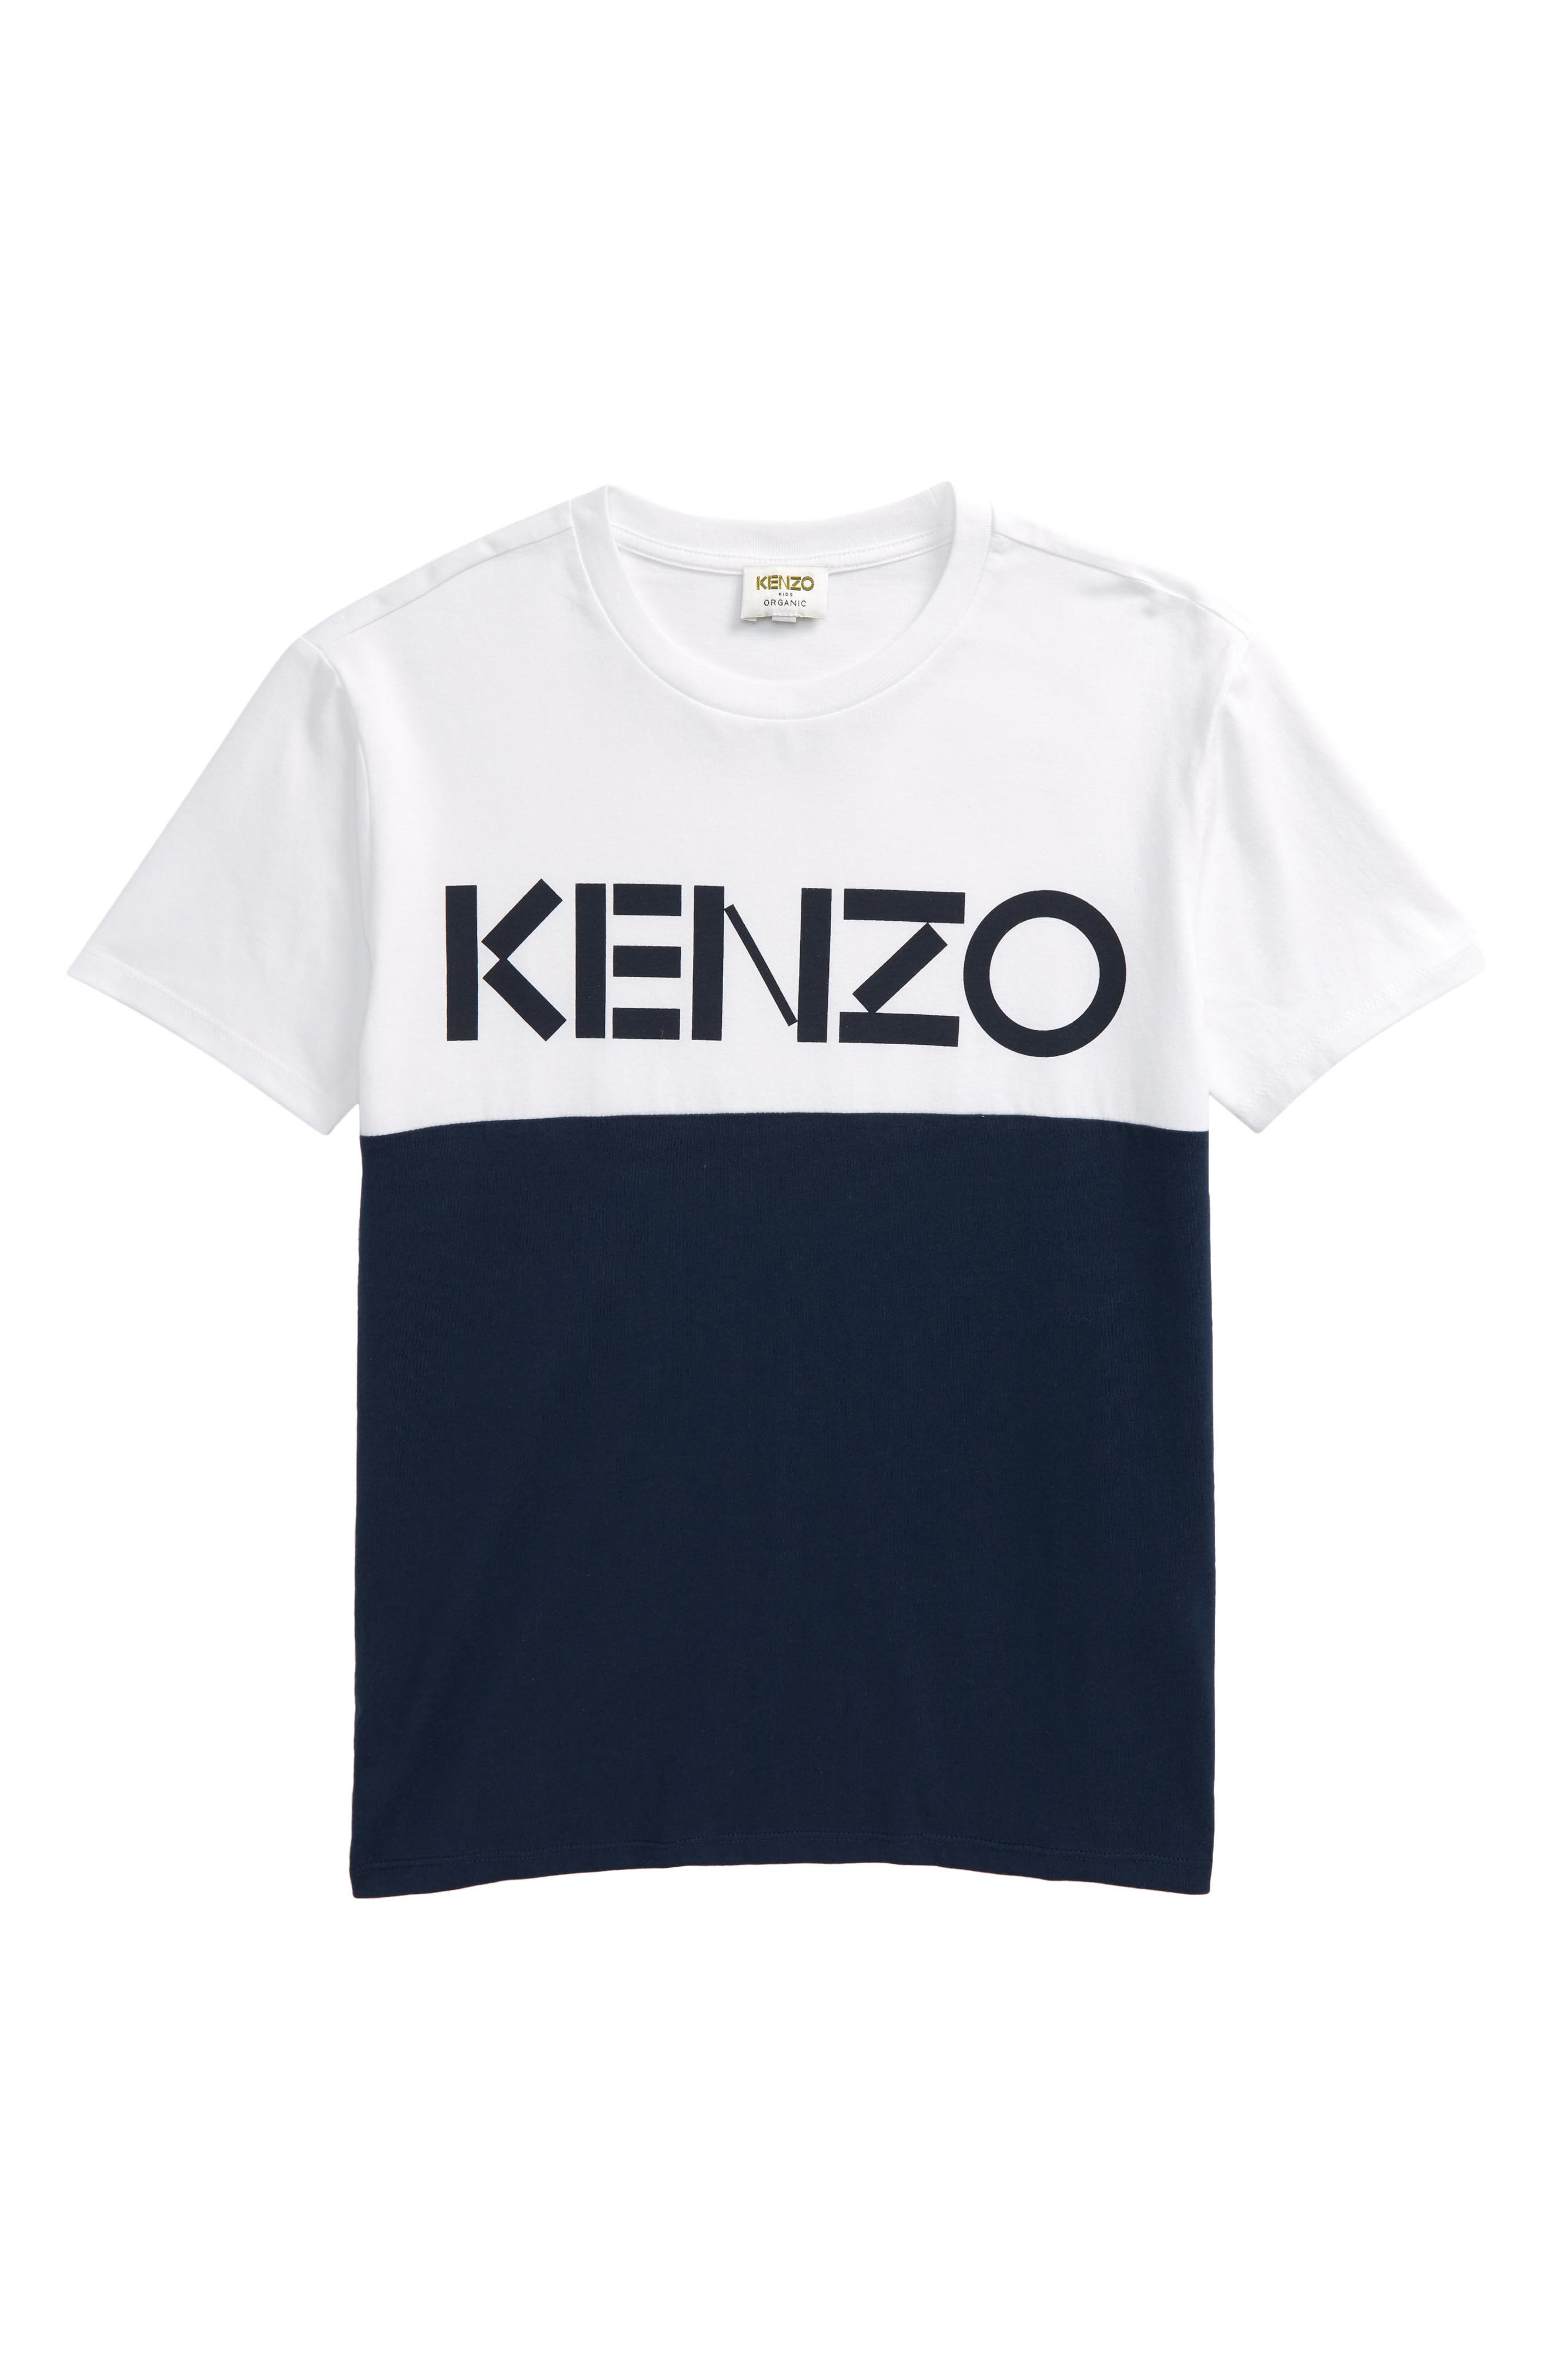 boys kenzo shirts